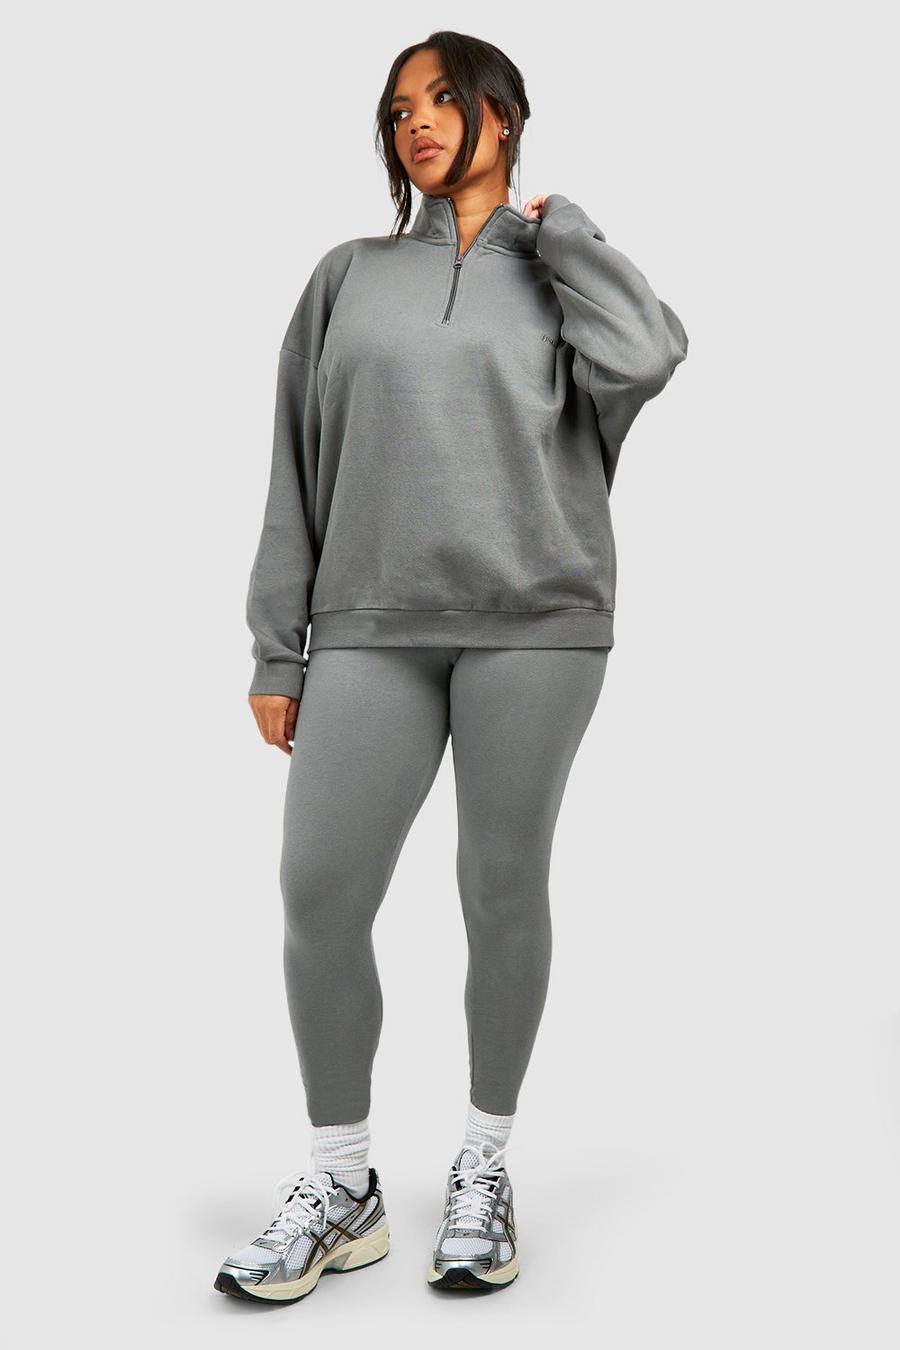 Charcoal Plus Oversized Half Zip Sweatshirt And Legging Set